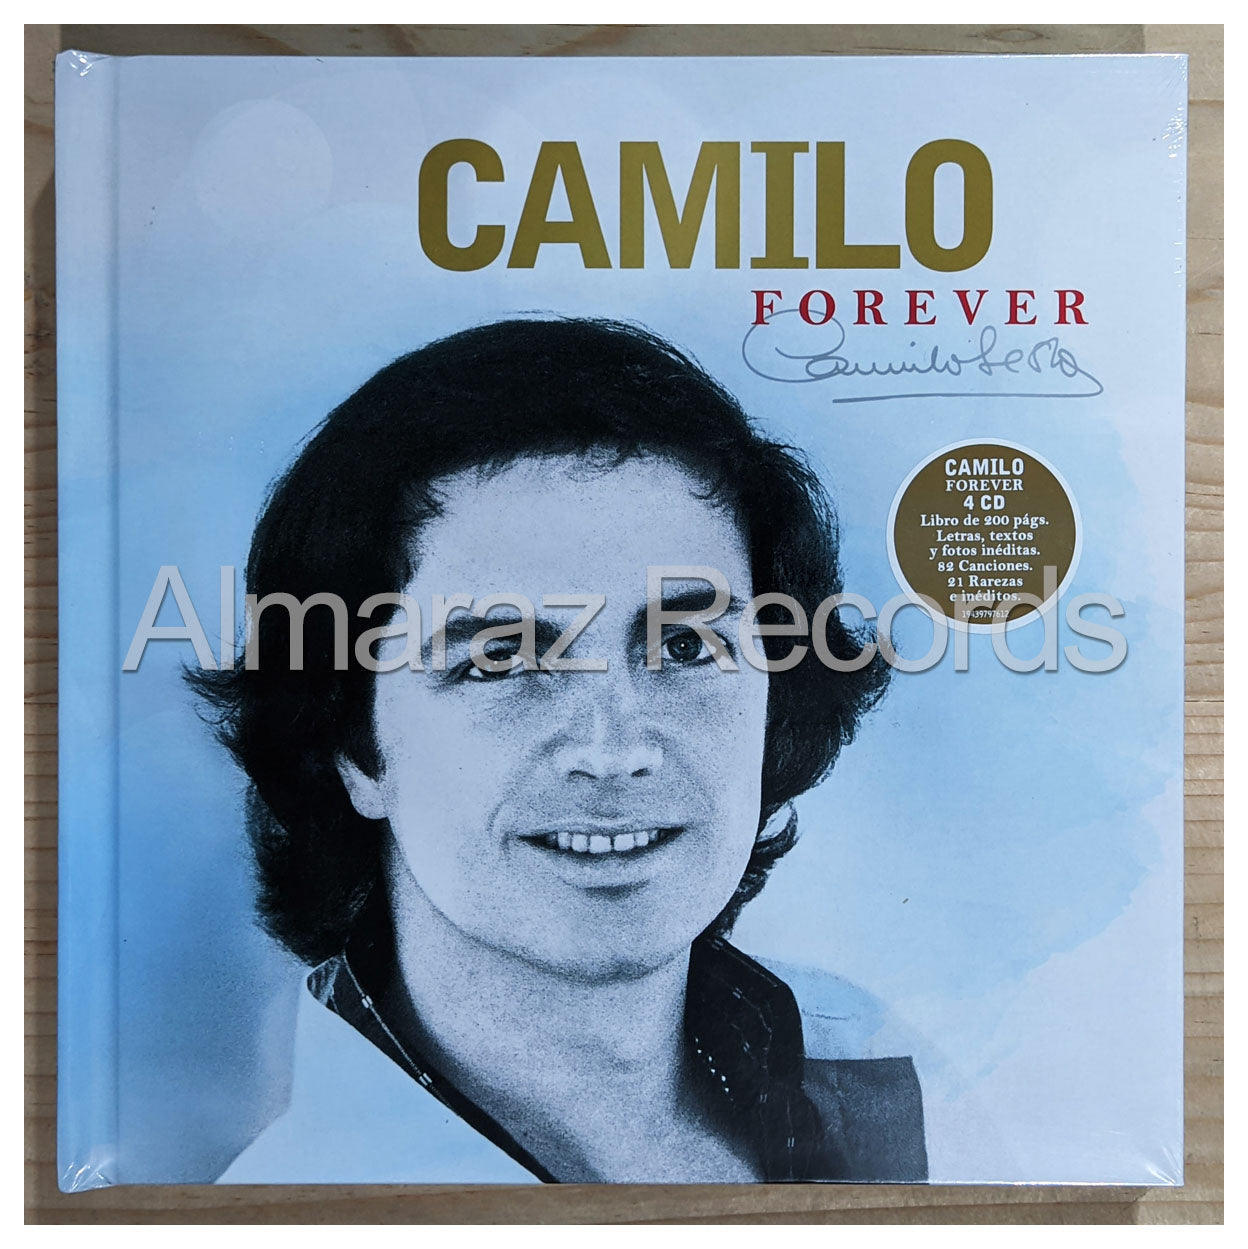 Camilo Sesto Forever Deluxe 4CD+Libro [Importado]